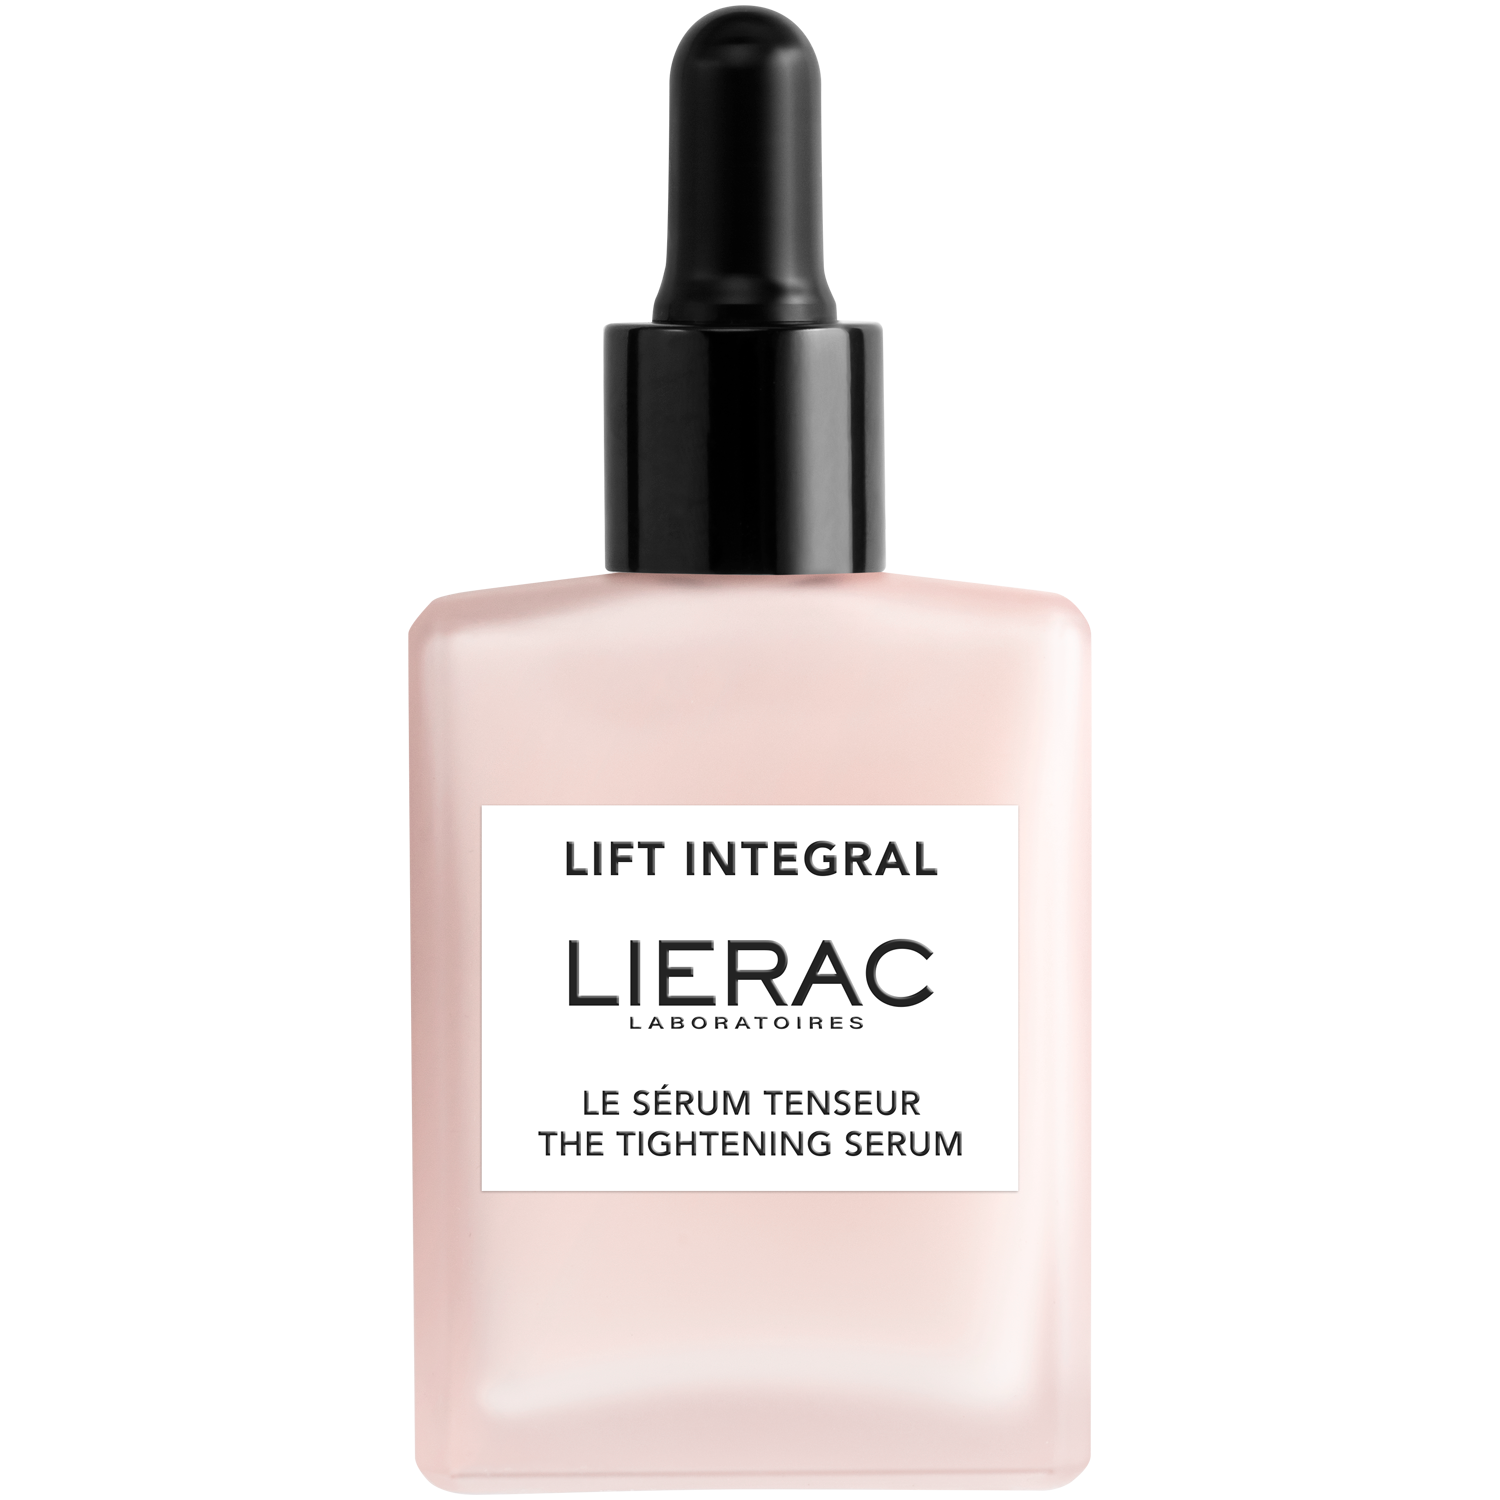 Lierac Lift Integral сыворотка для лица, 30 мл lierac lift integral сыворотка лифтинг интенсивного действия 30 мл